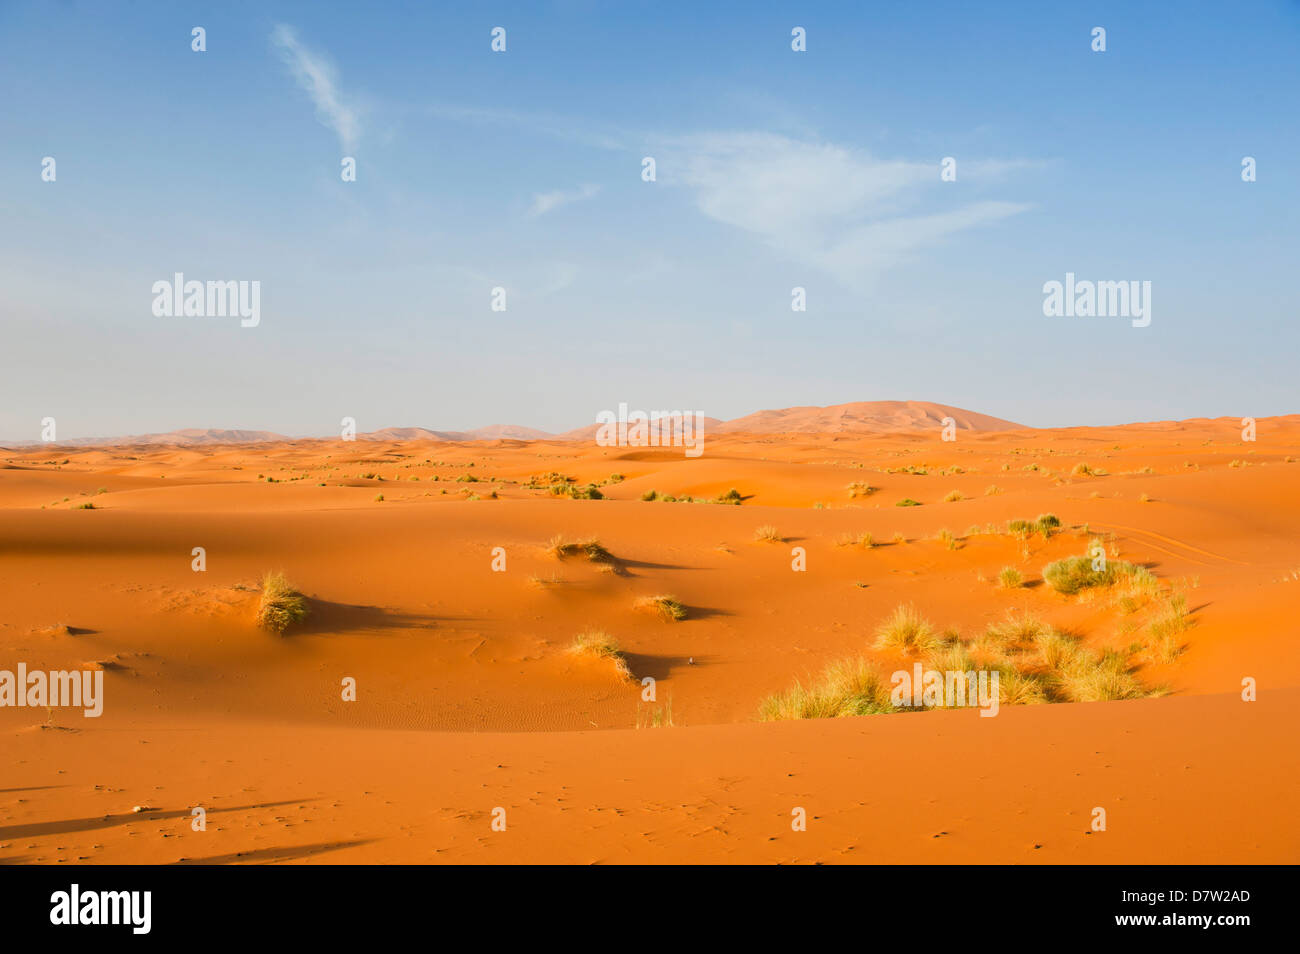 Paysage de dunes de sable au désert de l'Erg Chebbi, désert du Sahara, près de Merzouga, Maroc, Afrique du Nord Banque D'Images